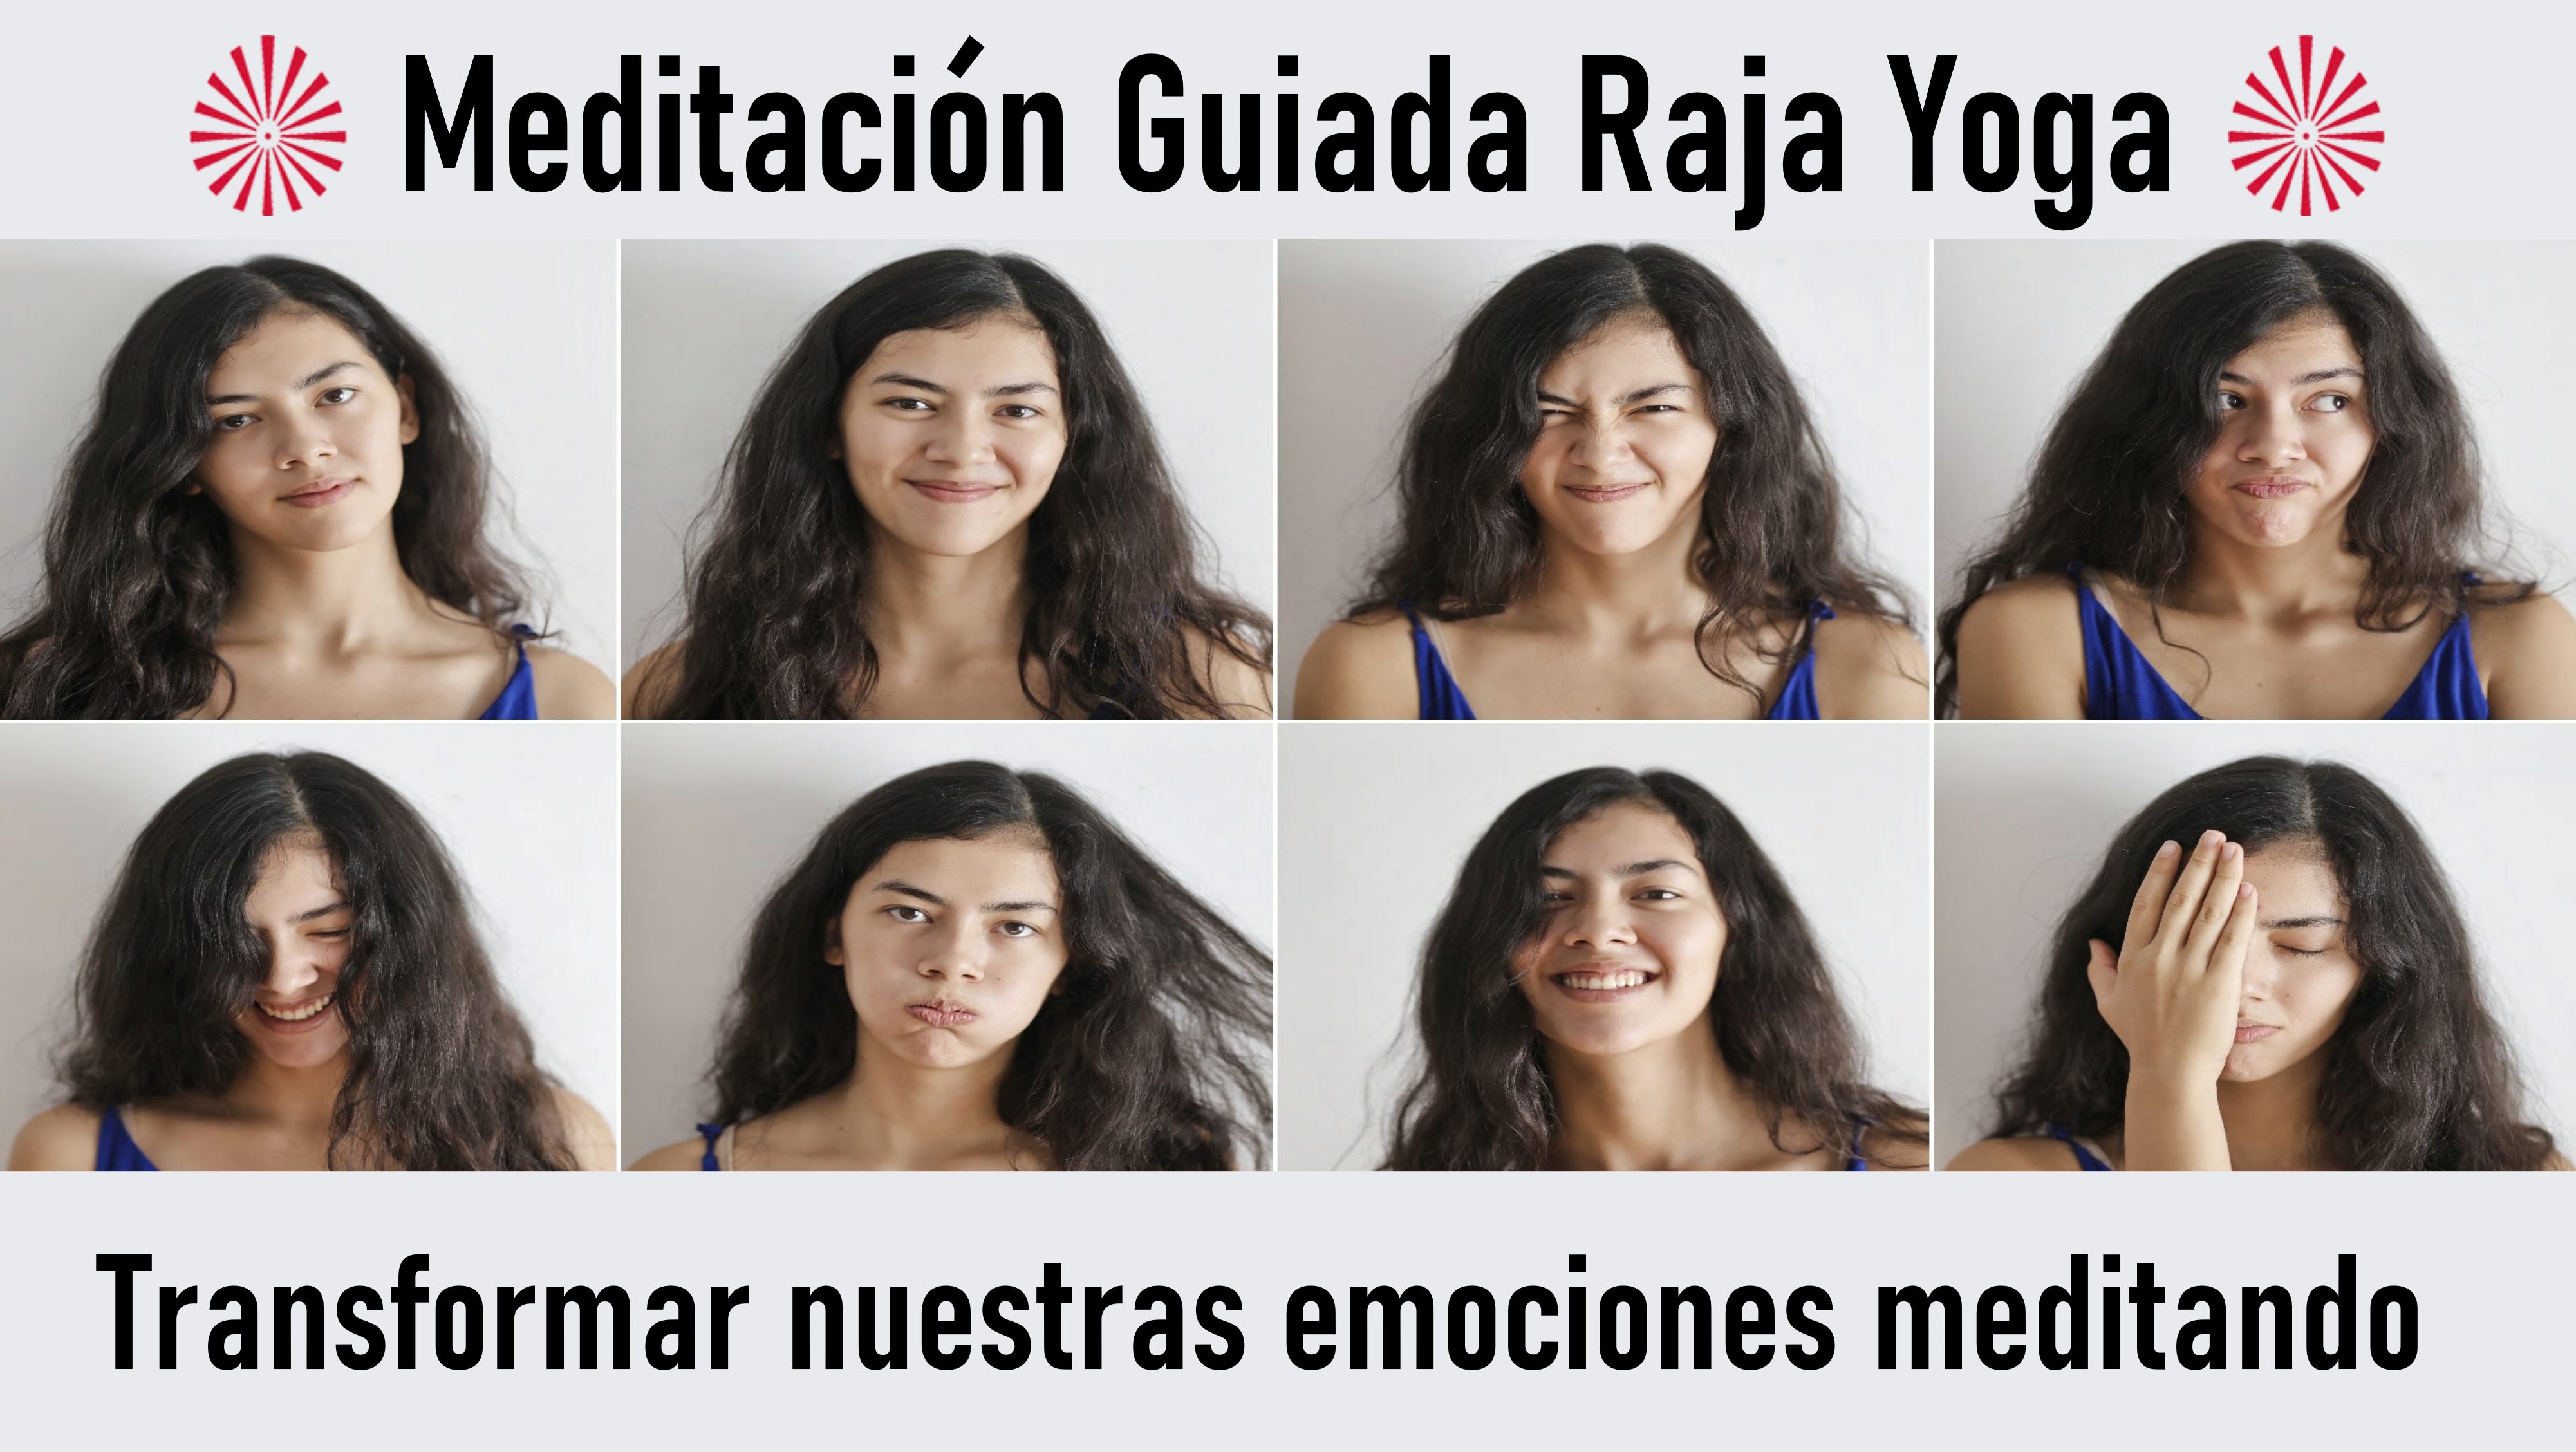 Meditación Raja Yoga:  Transformar nuestras emociones meditando (14 Octubre 2020) On-line desde Sevilla